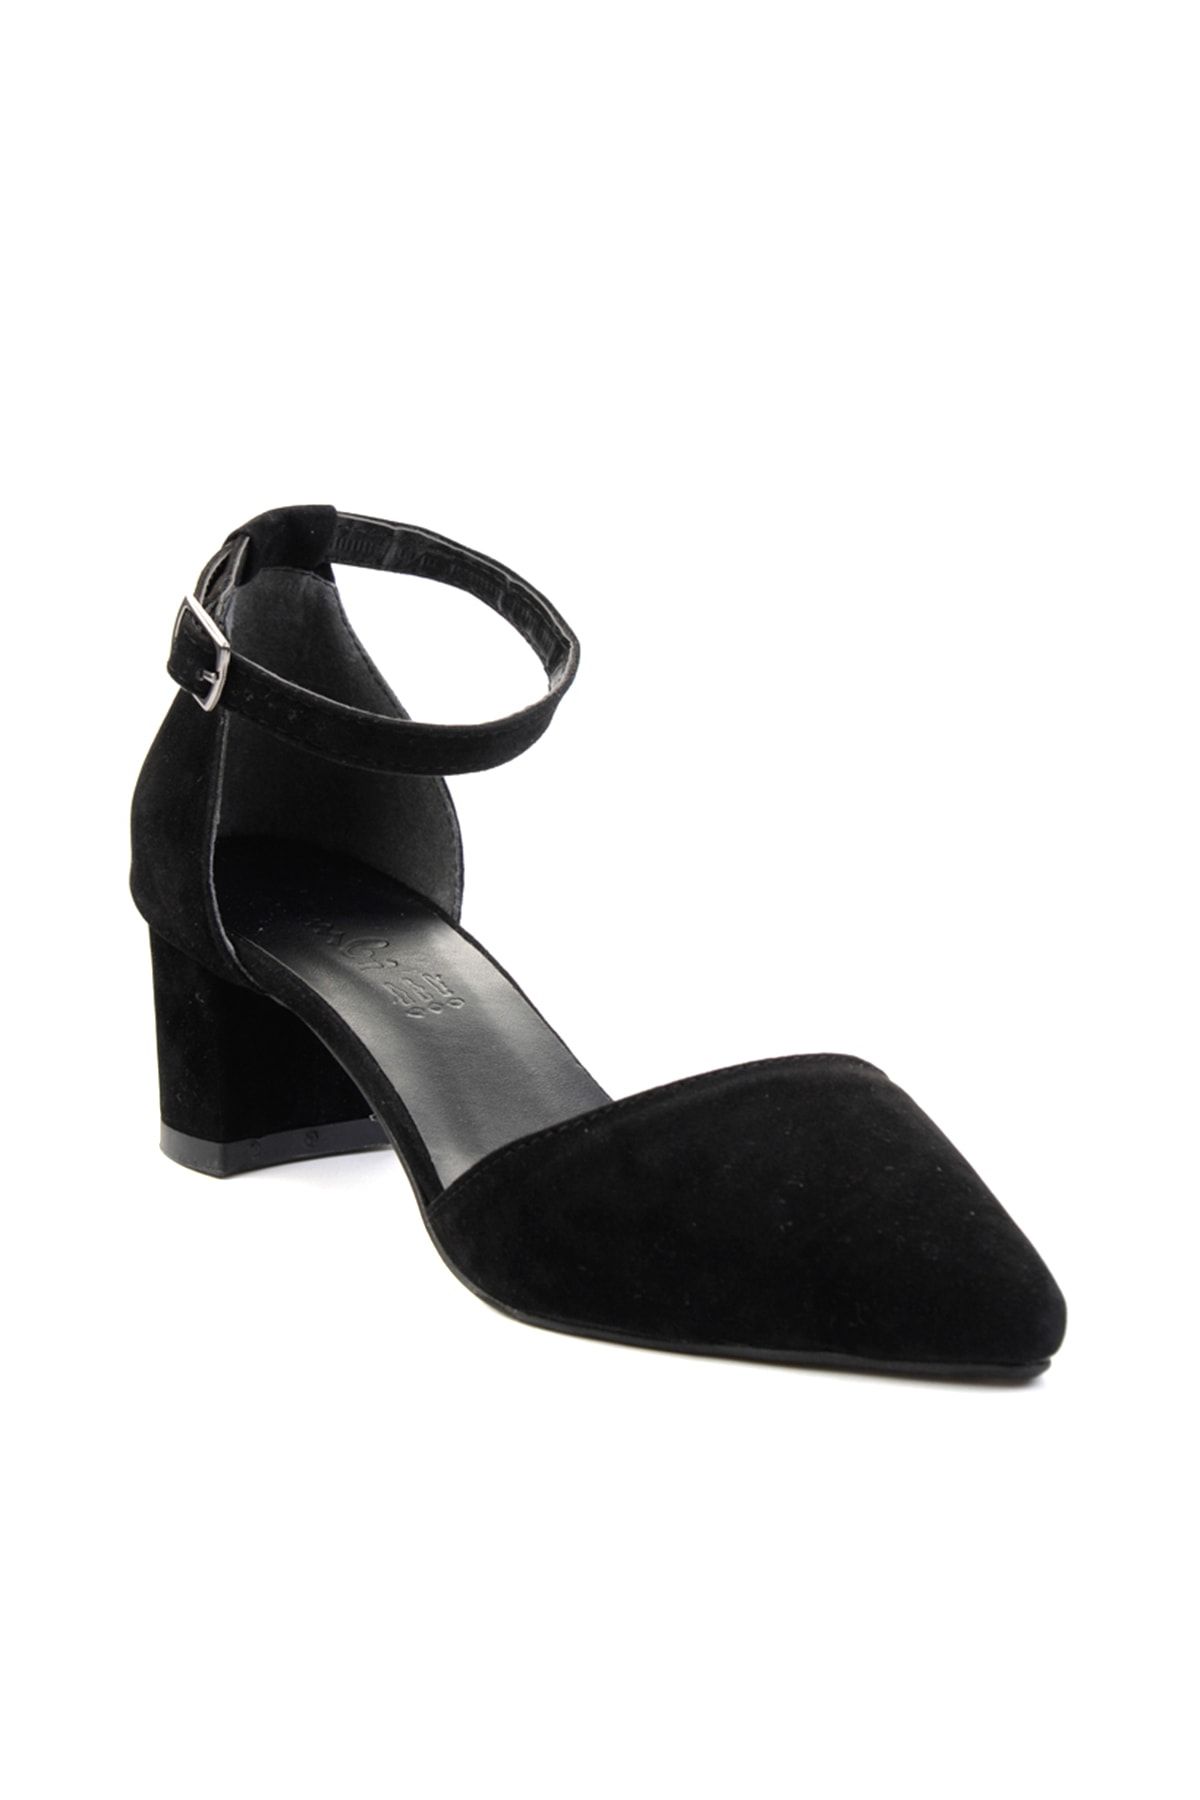 Siyah Süet Kadın Klasik Topuklu Ayakkabı K01503720072